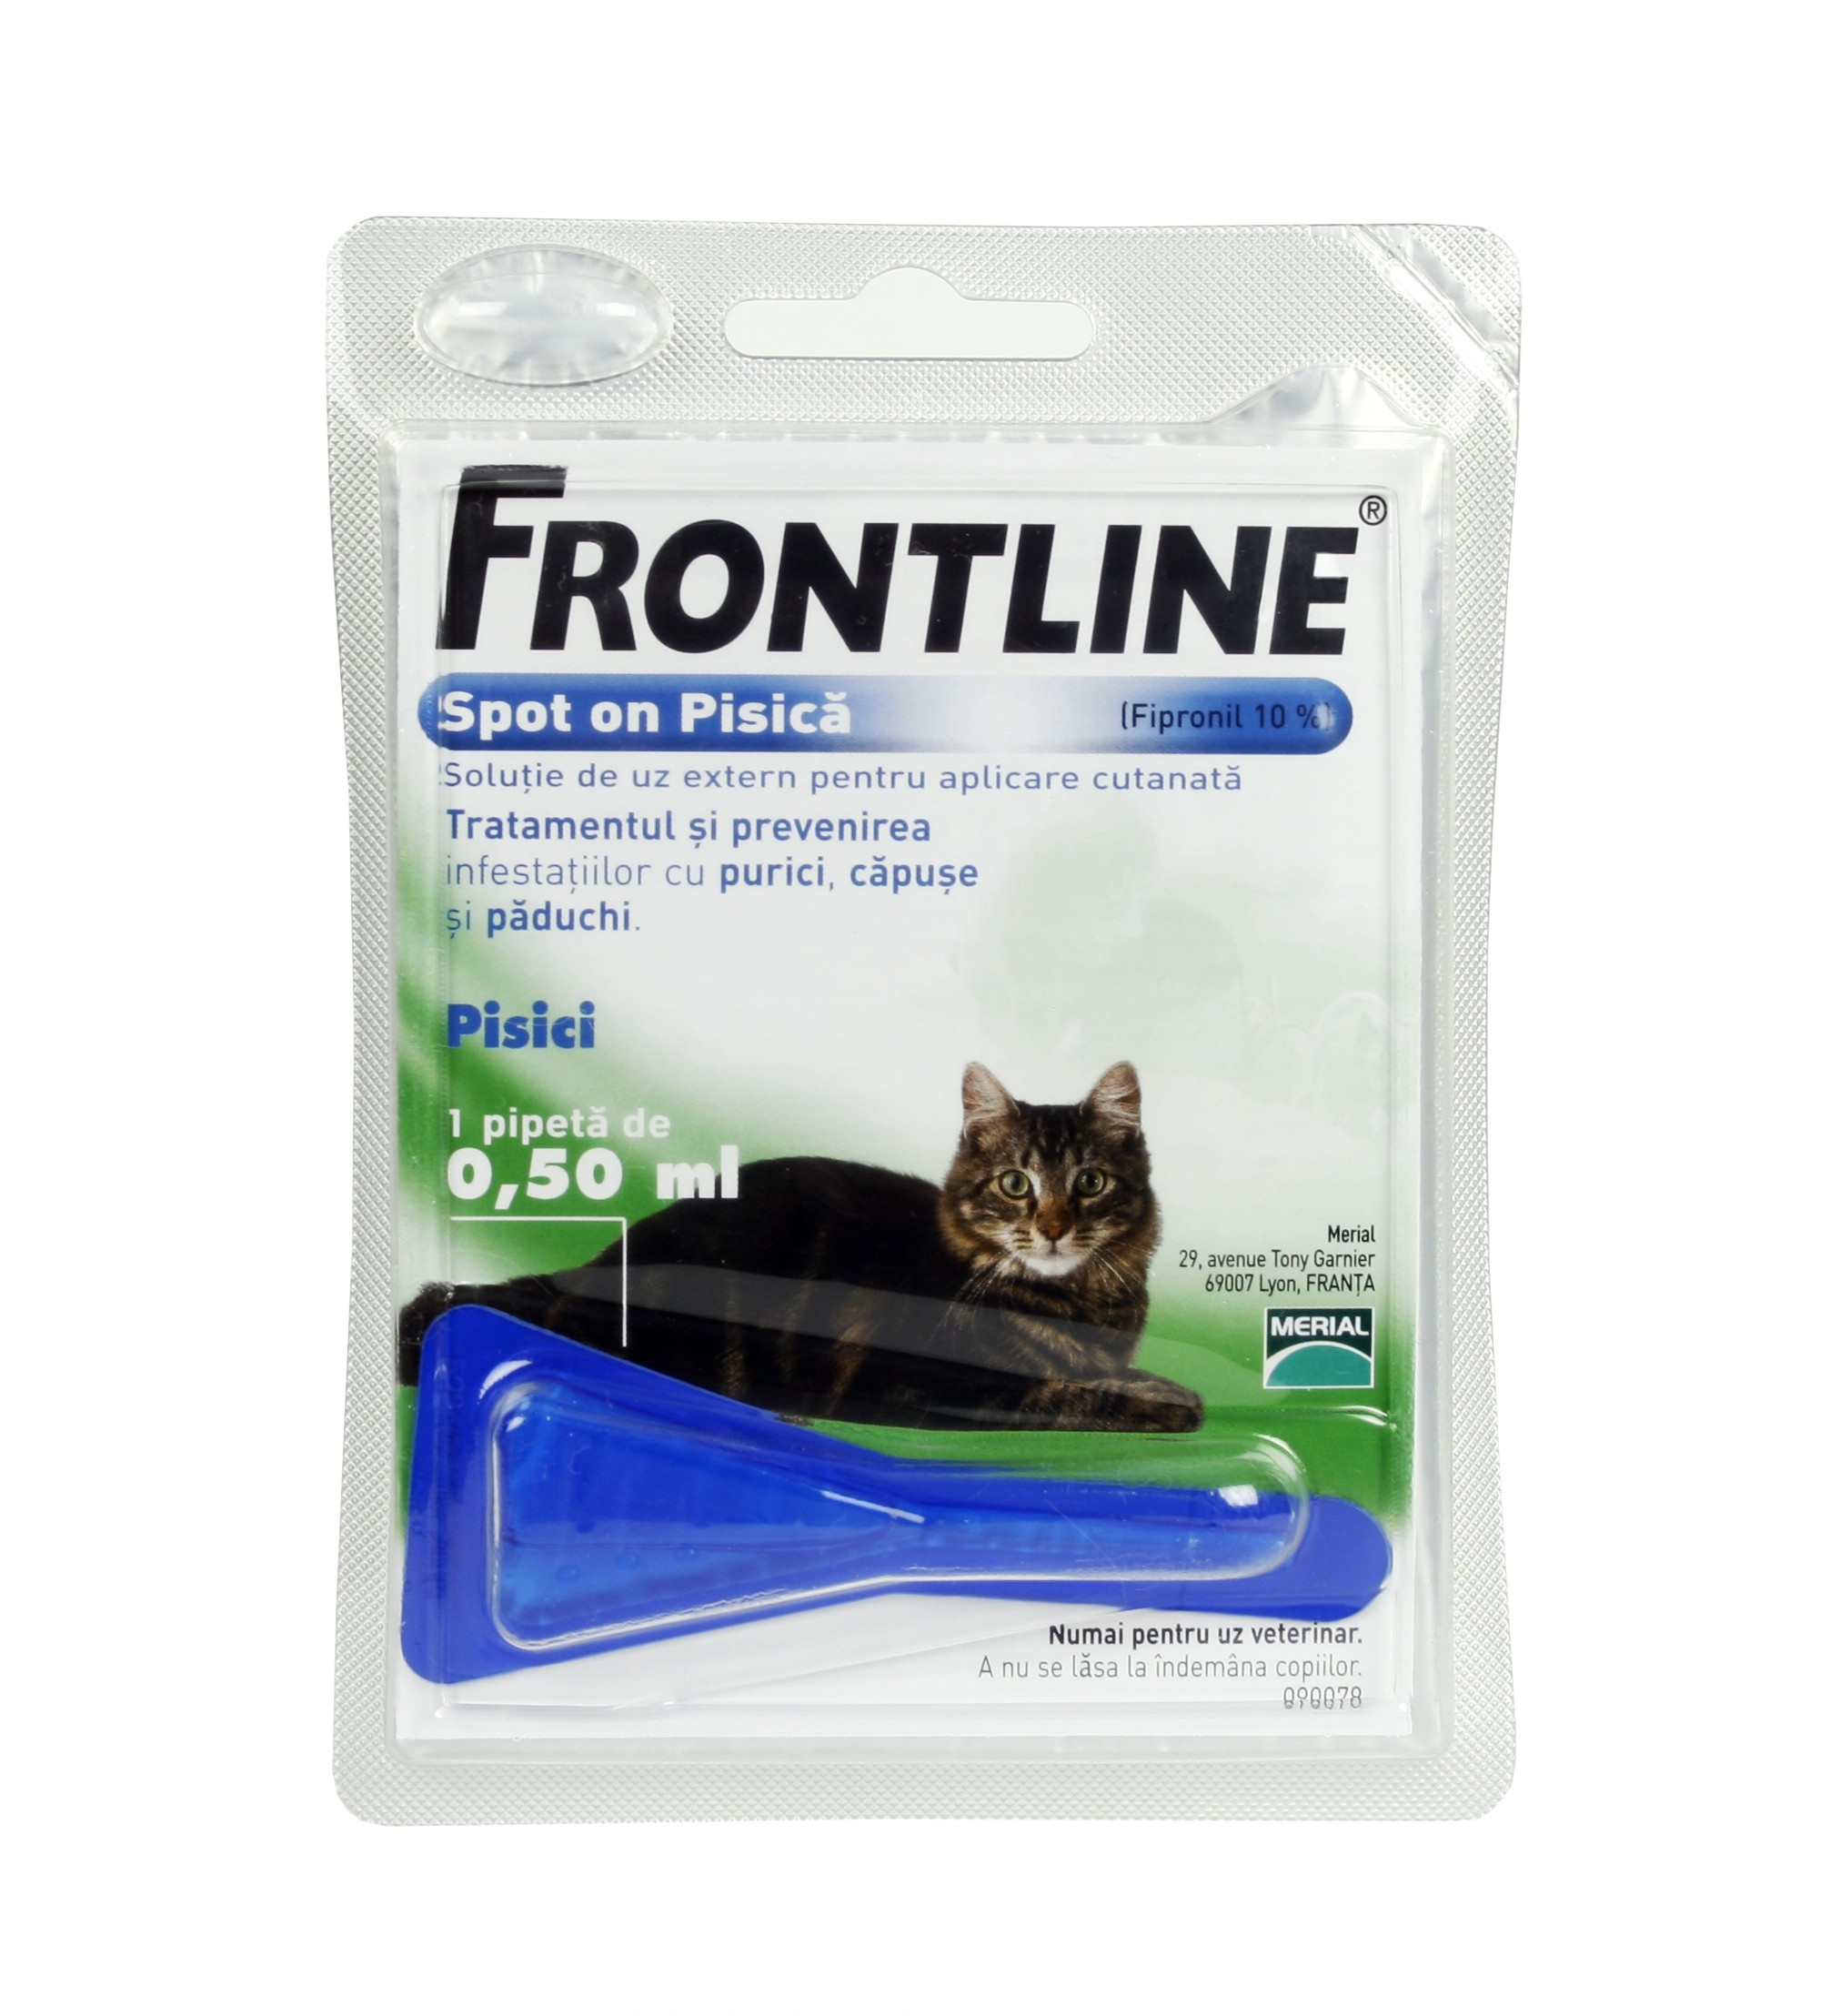 Frontline Spot On Pisica - 1 Pipeta Antiparazitara imagine